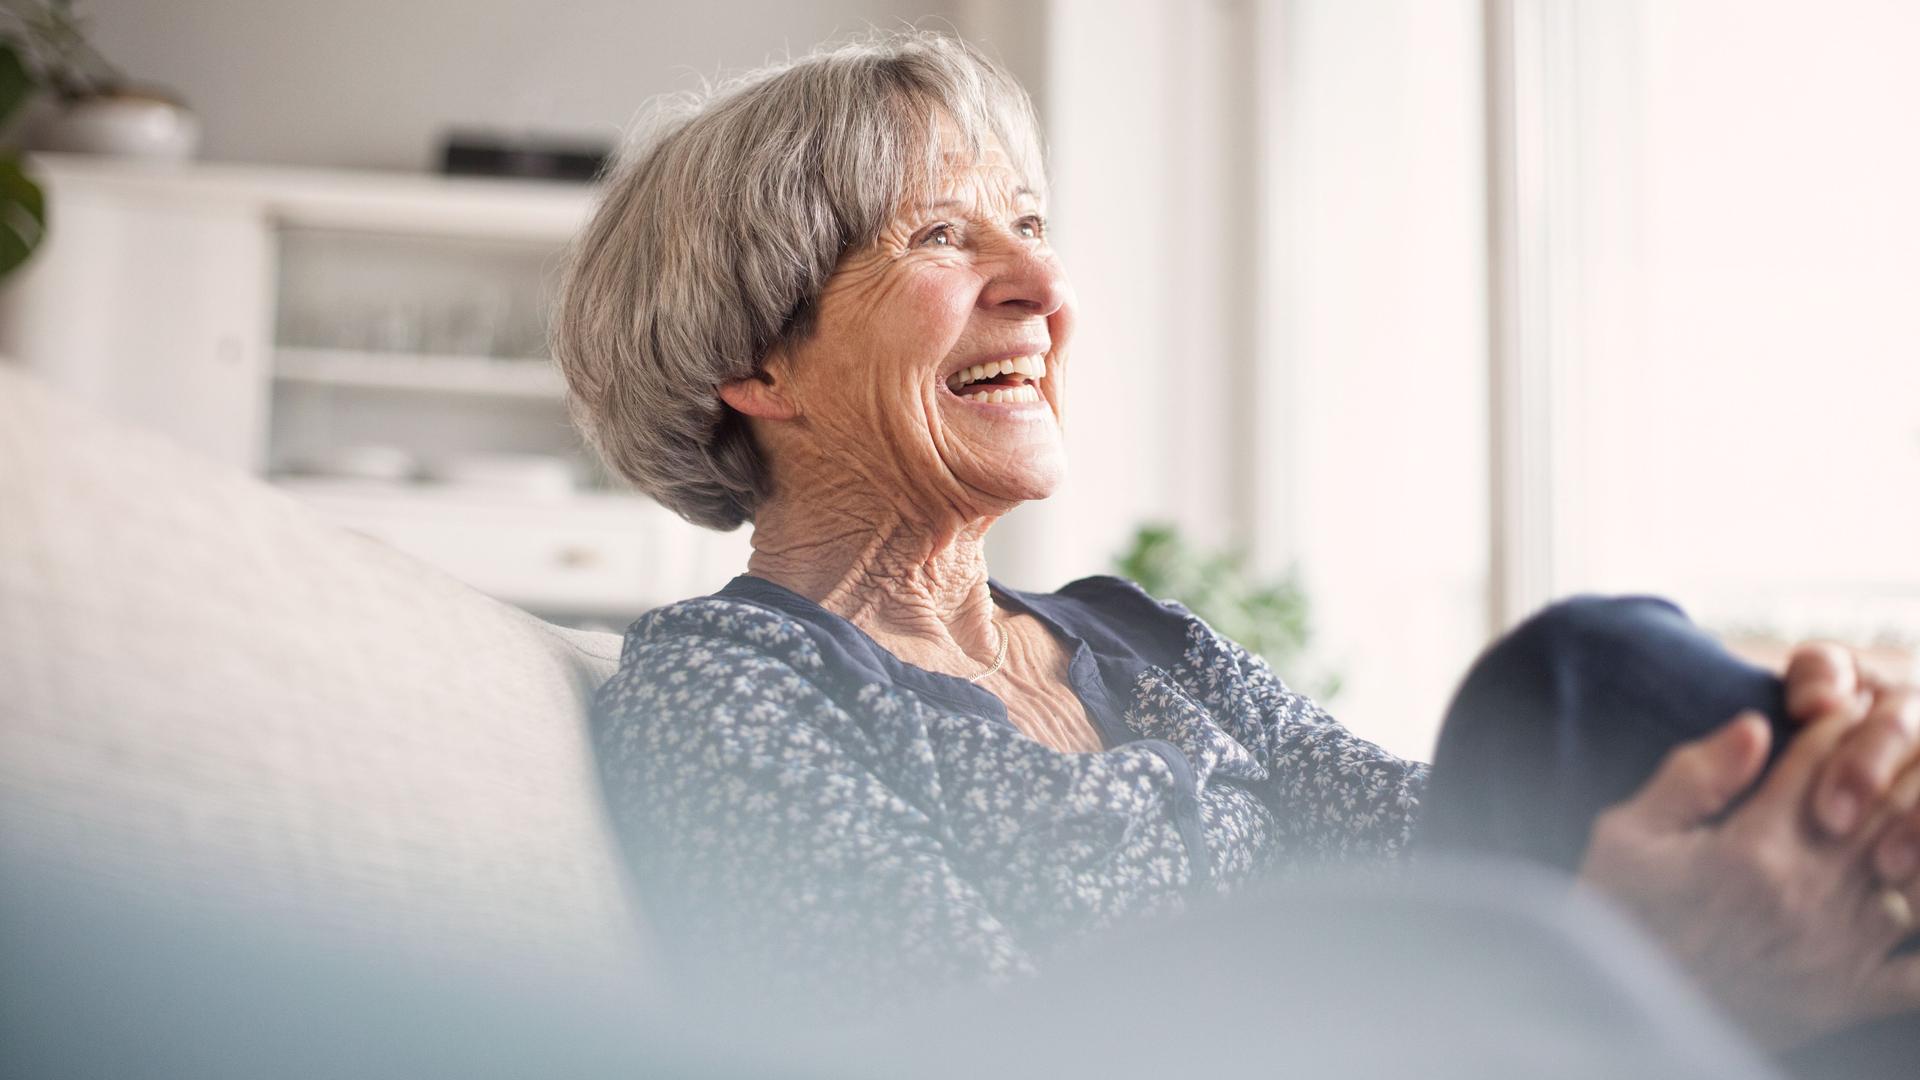 Porträt einer lachenden älteren Frau, die auf einem grauen Sofa sitzt.